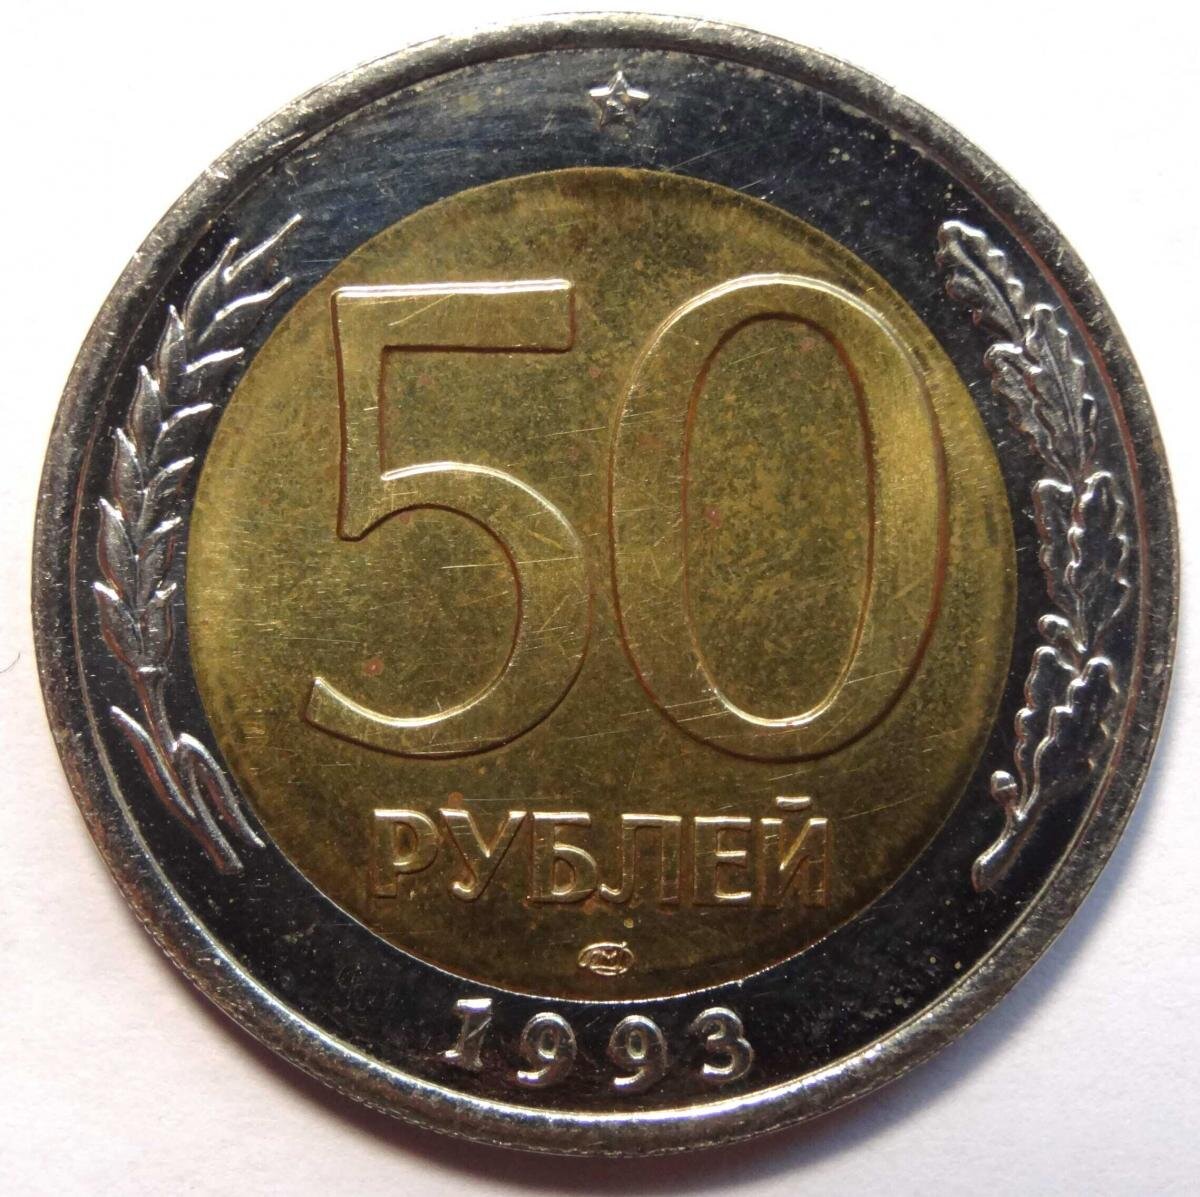 50 Рублей 1993 г. ЛМД , биметаллические